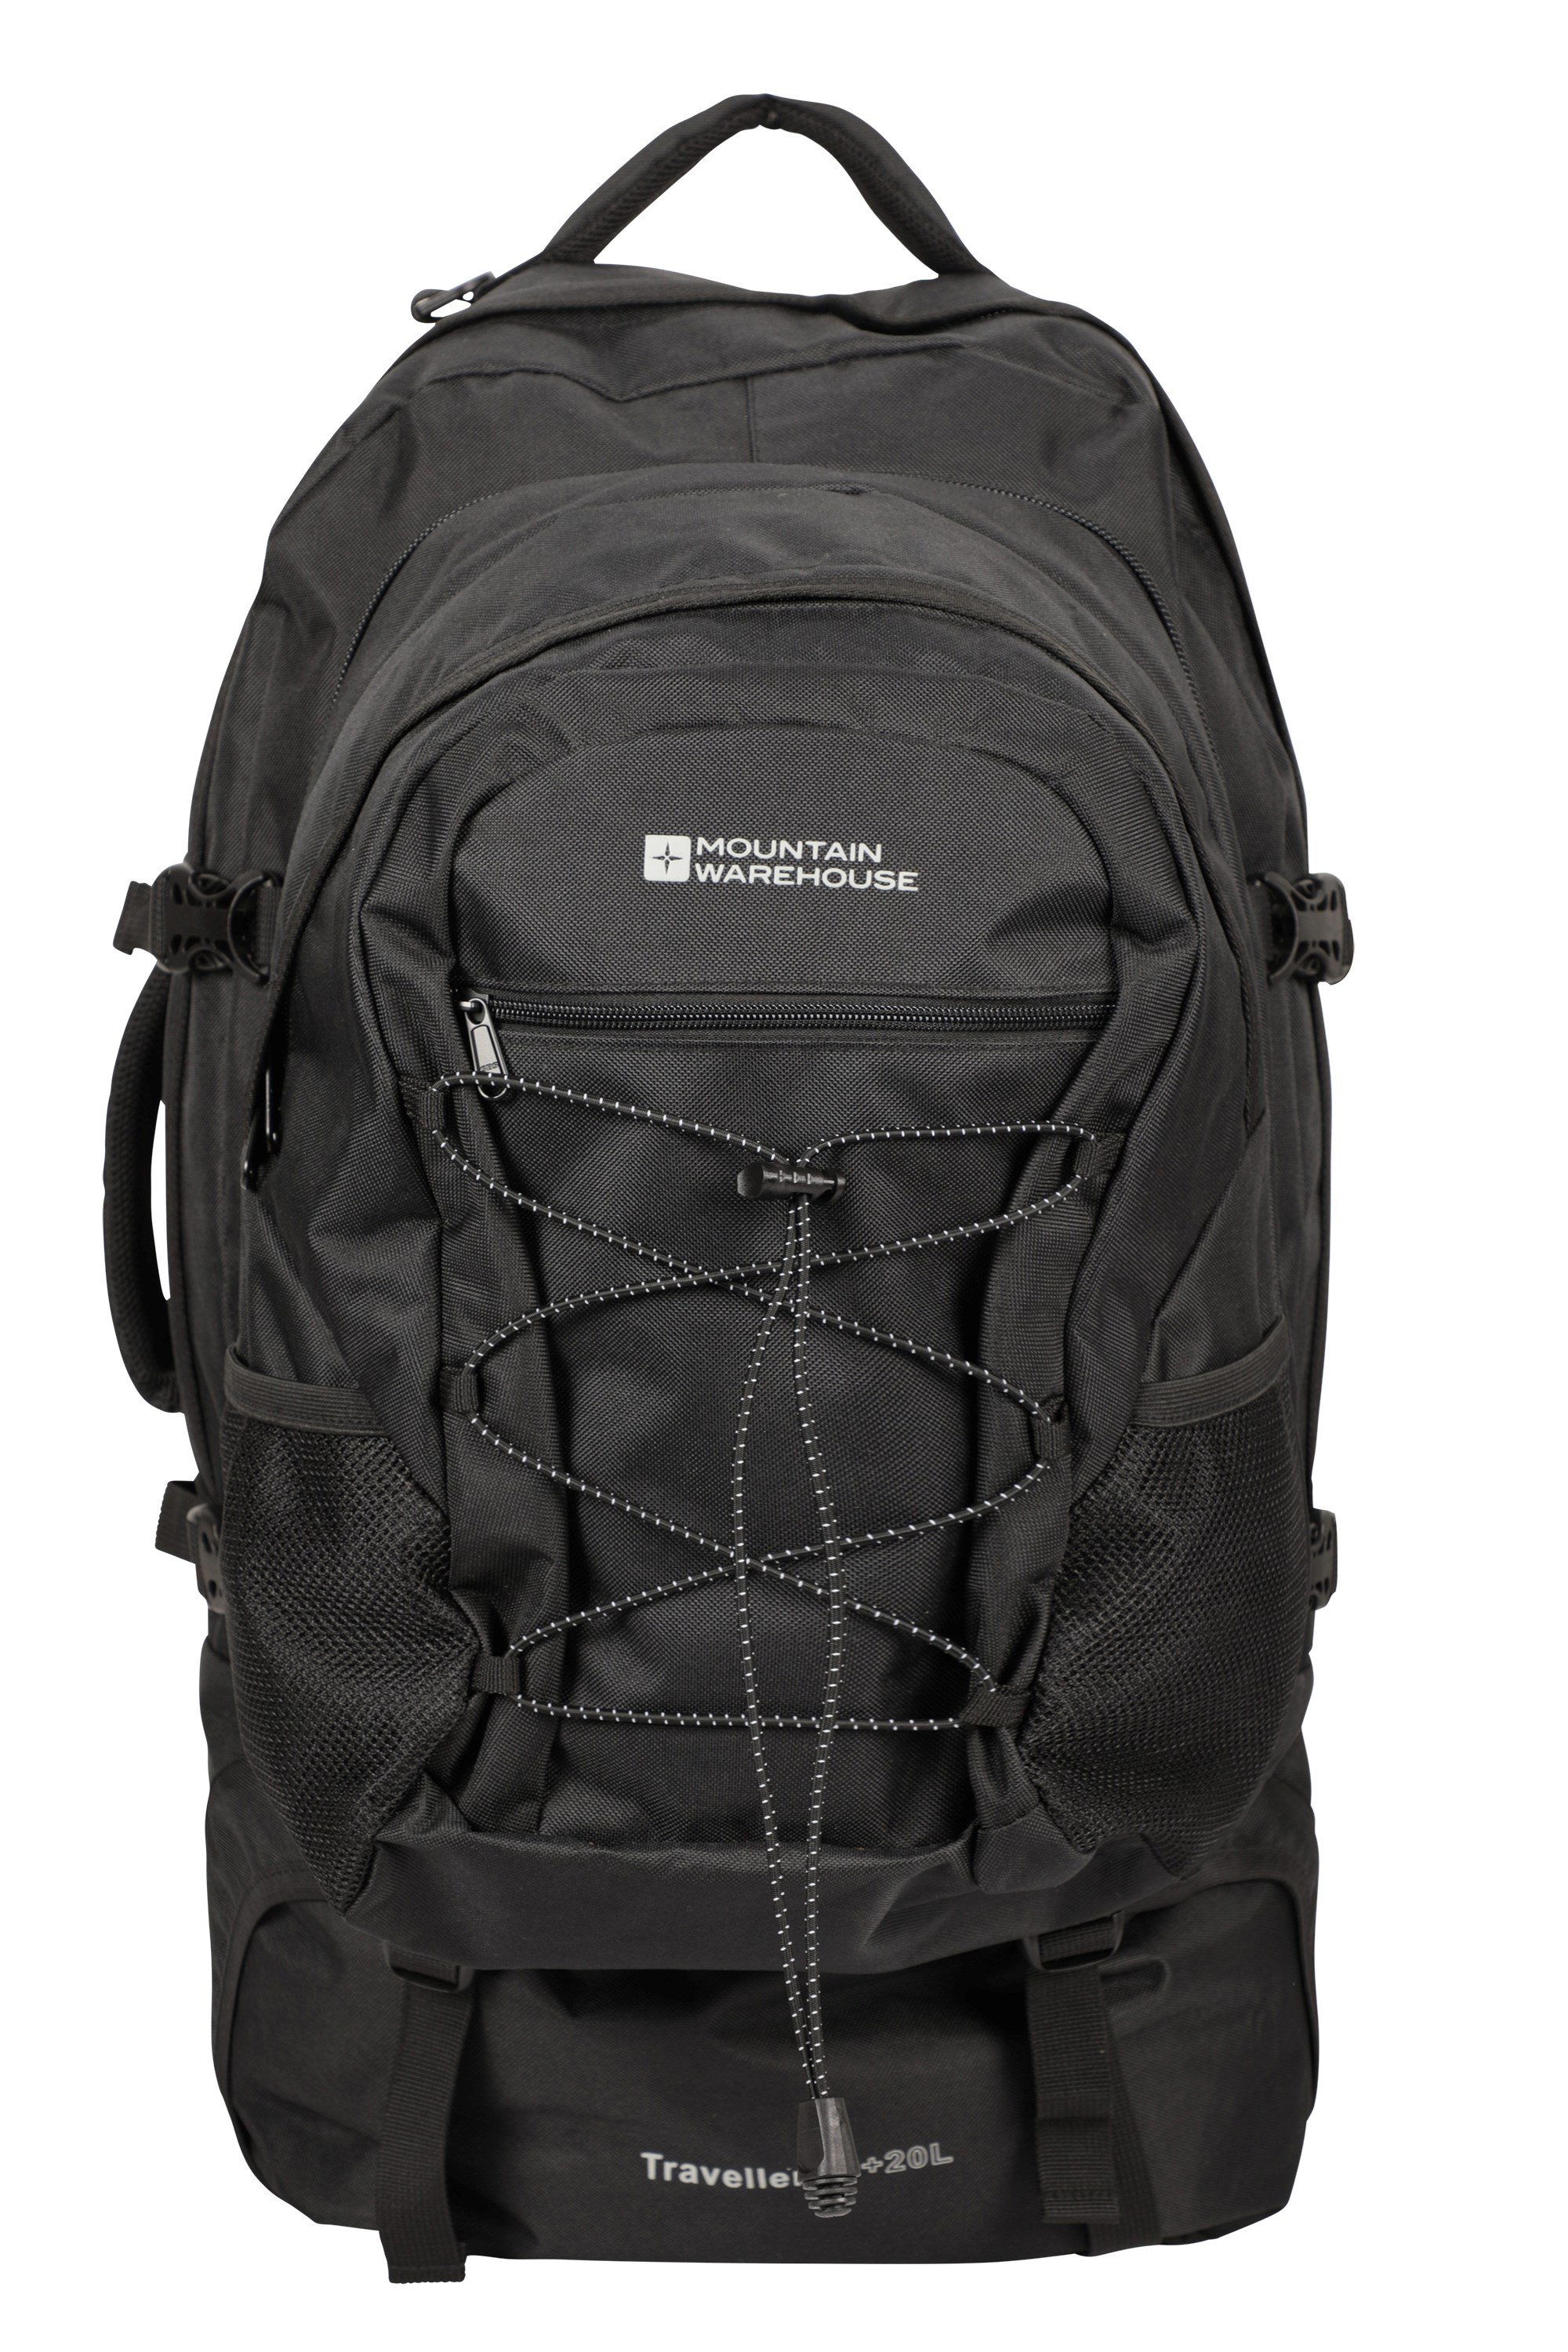 Hiking Backpacks buy online now